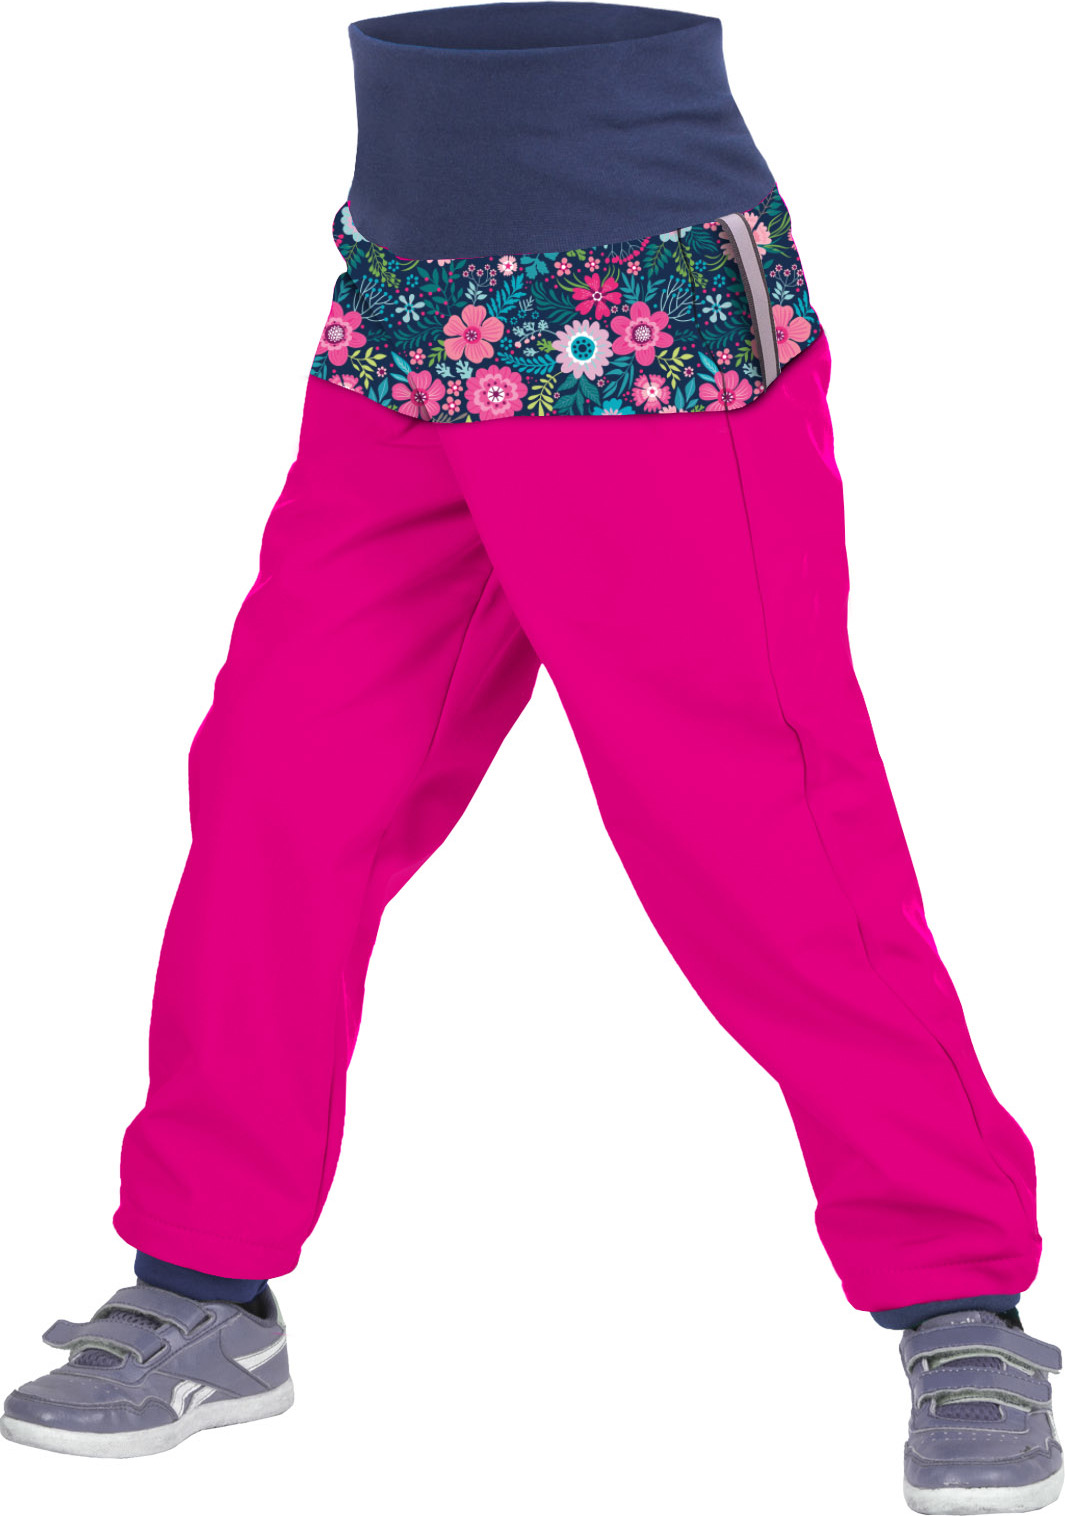 Batolecí softshellové kalhoty UNUO s fleecem Květinky fuchsiové (Softshell toodler trousers) Velikost: 86/92